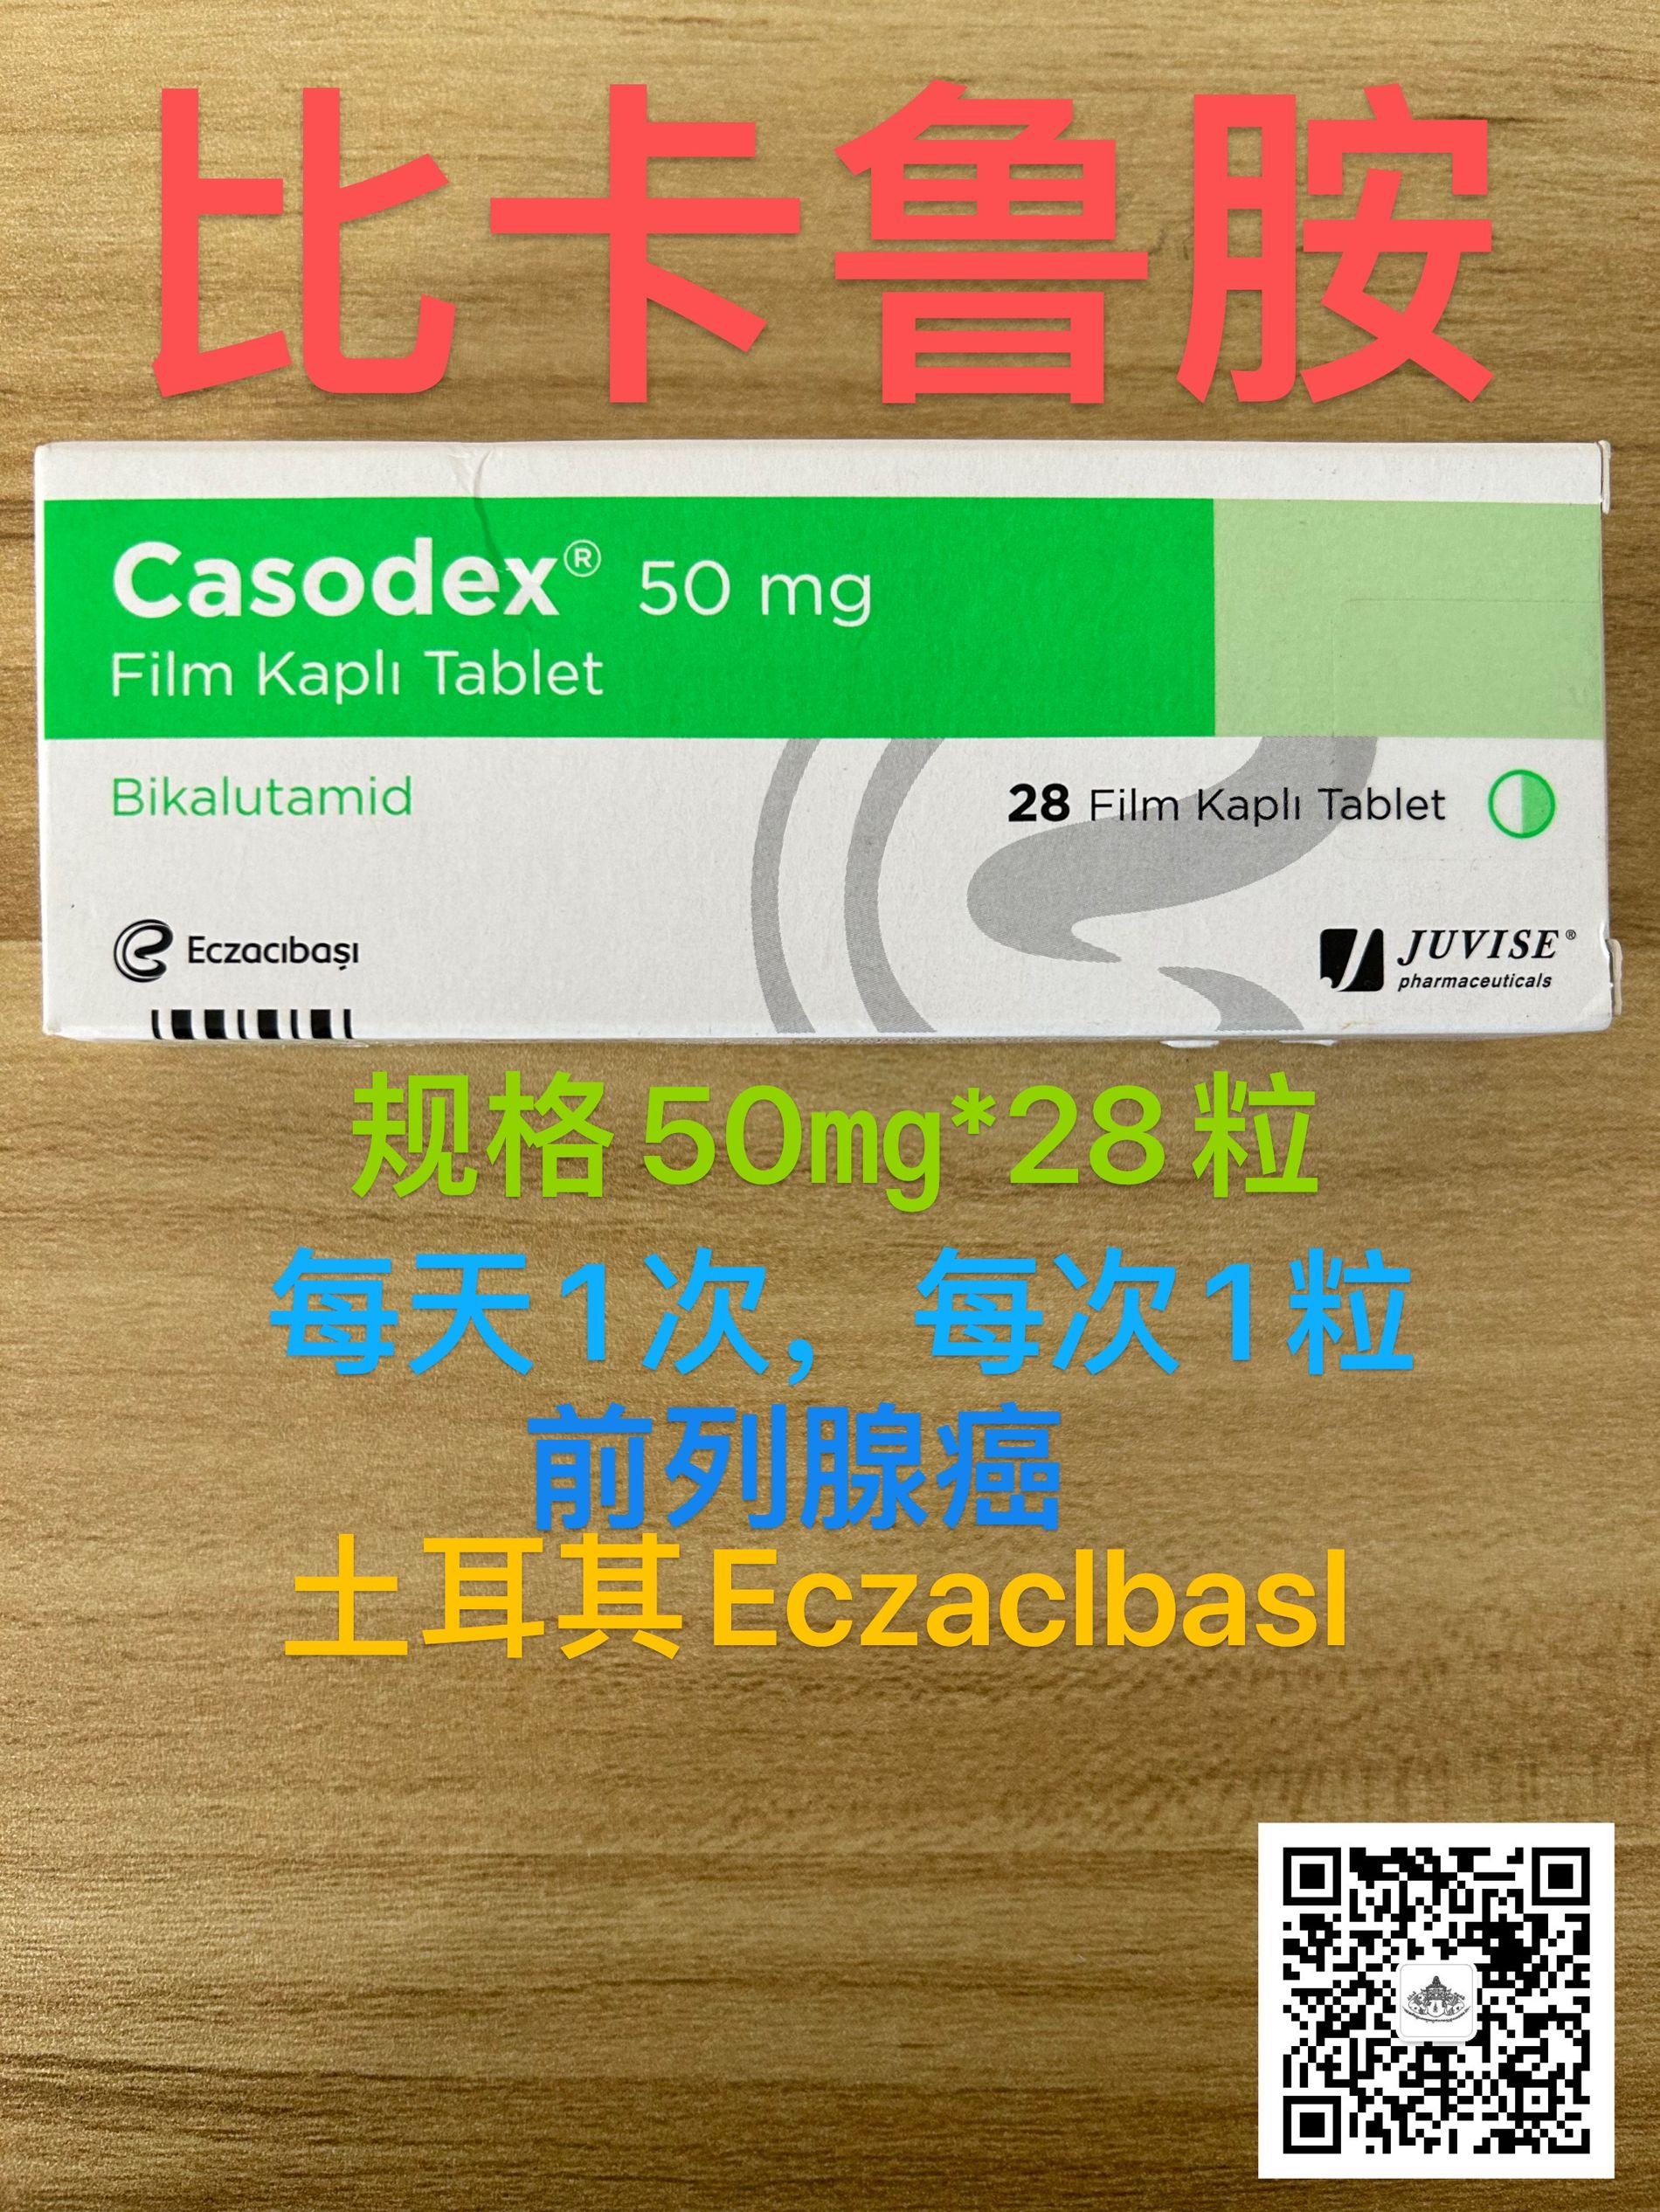 Casodex比卡鲁胺的服用时间